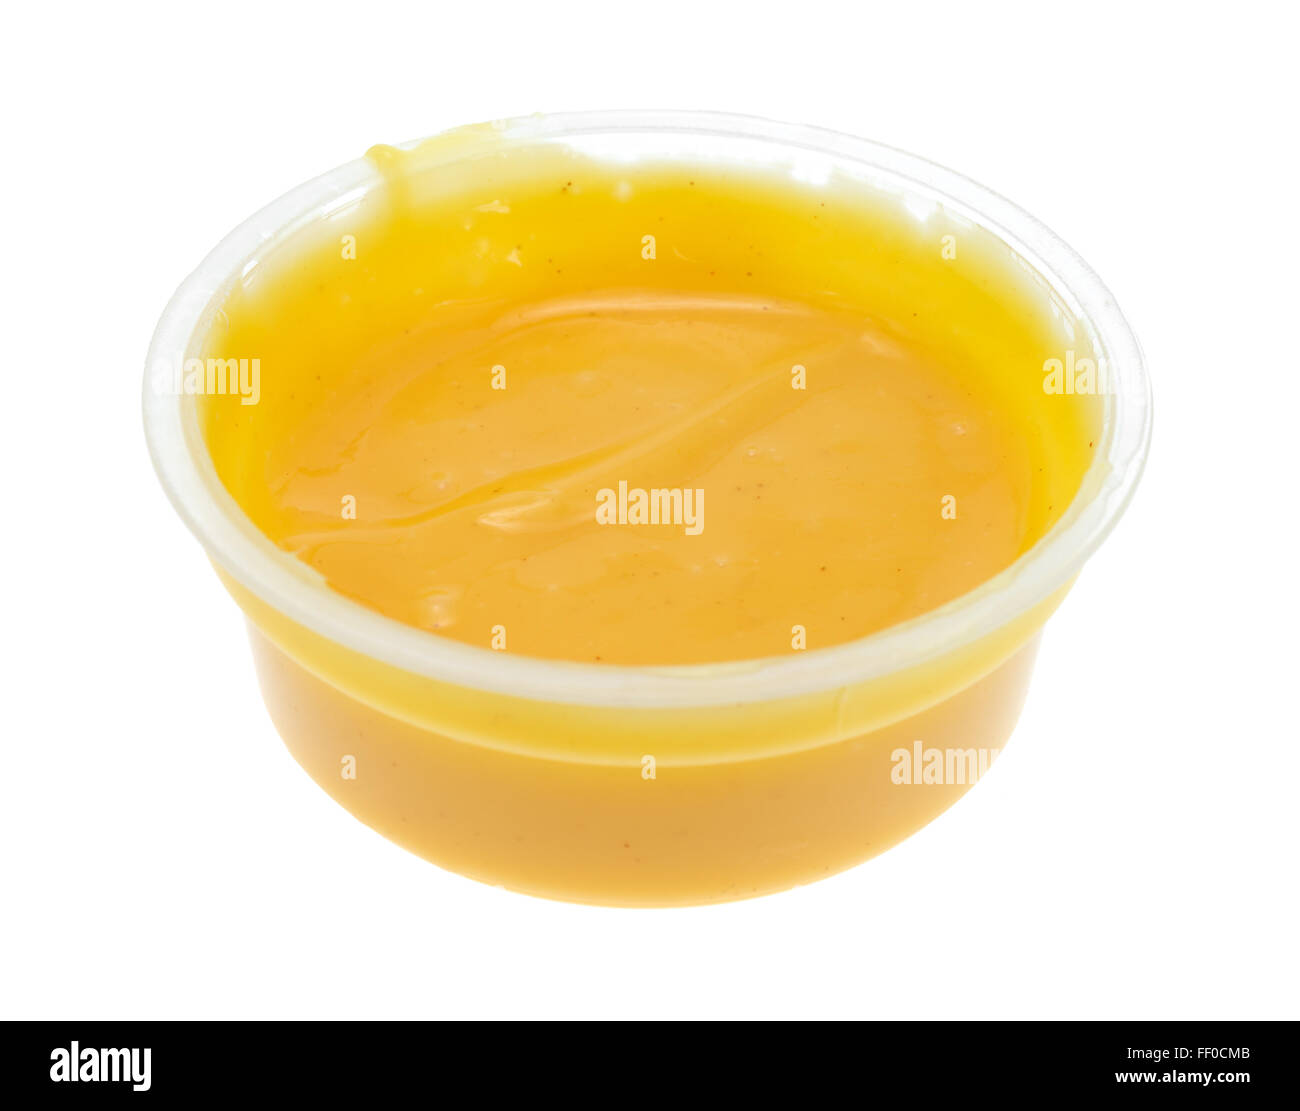 Seitlicher Blick auf einen kleinen Behälter mit Honig-Senf Salatdressing isoliert auf einem weißen Hintergrund. Stockfoto